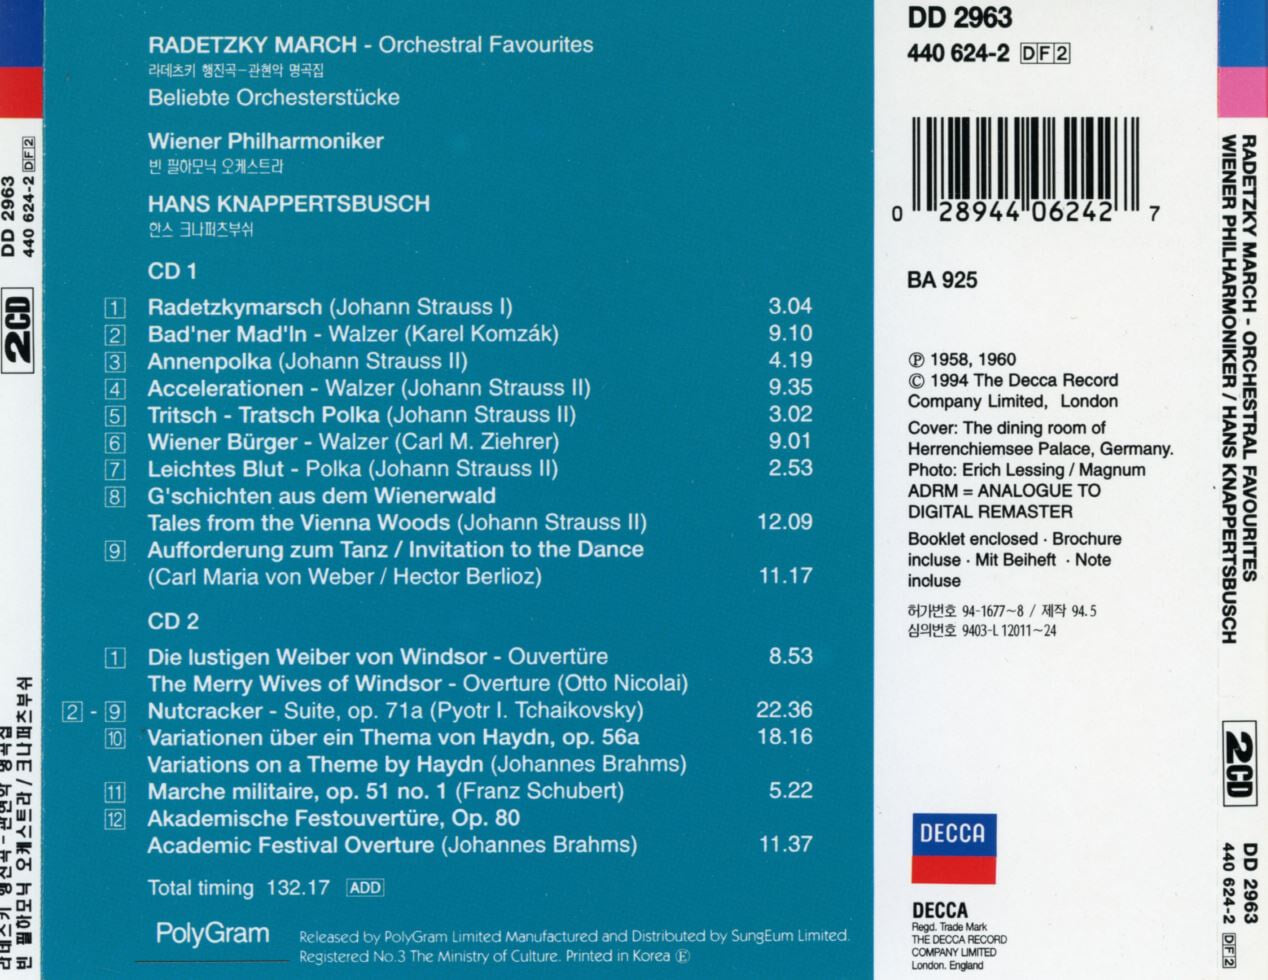 한스 크나퍼츠부쉬 - Hans Knappertsbusch - Radetzky Orchestral Favourites 2Cds